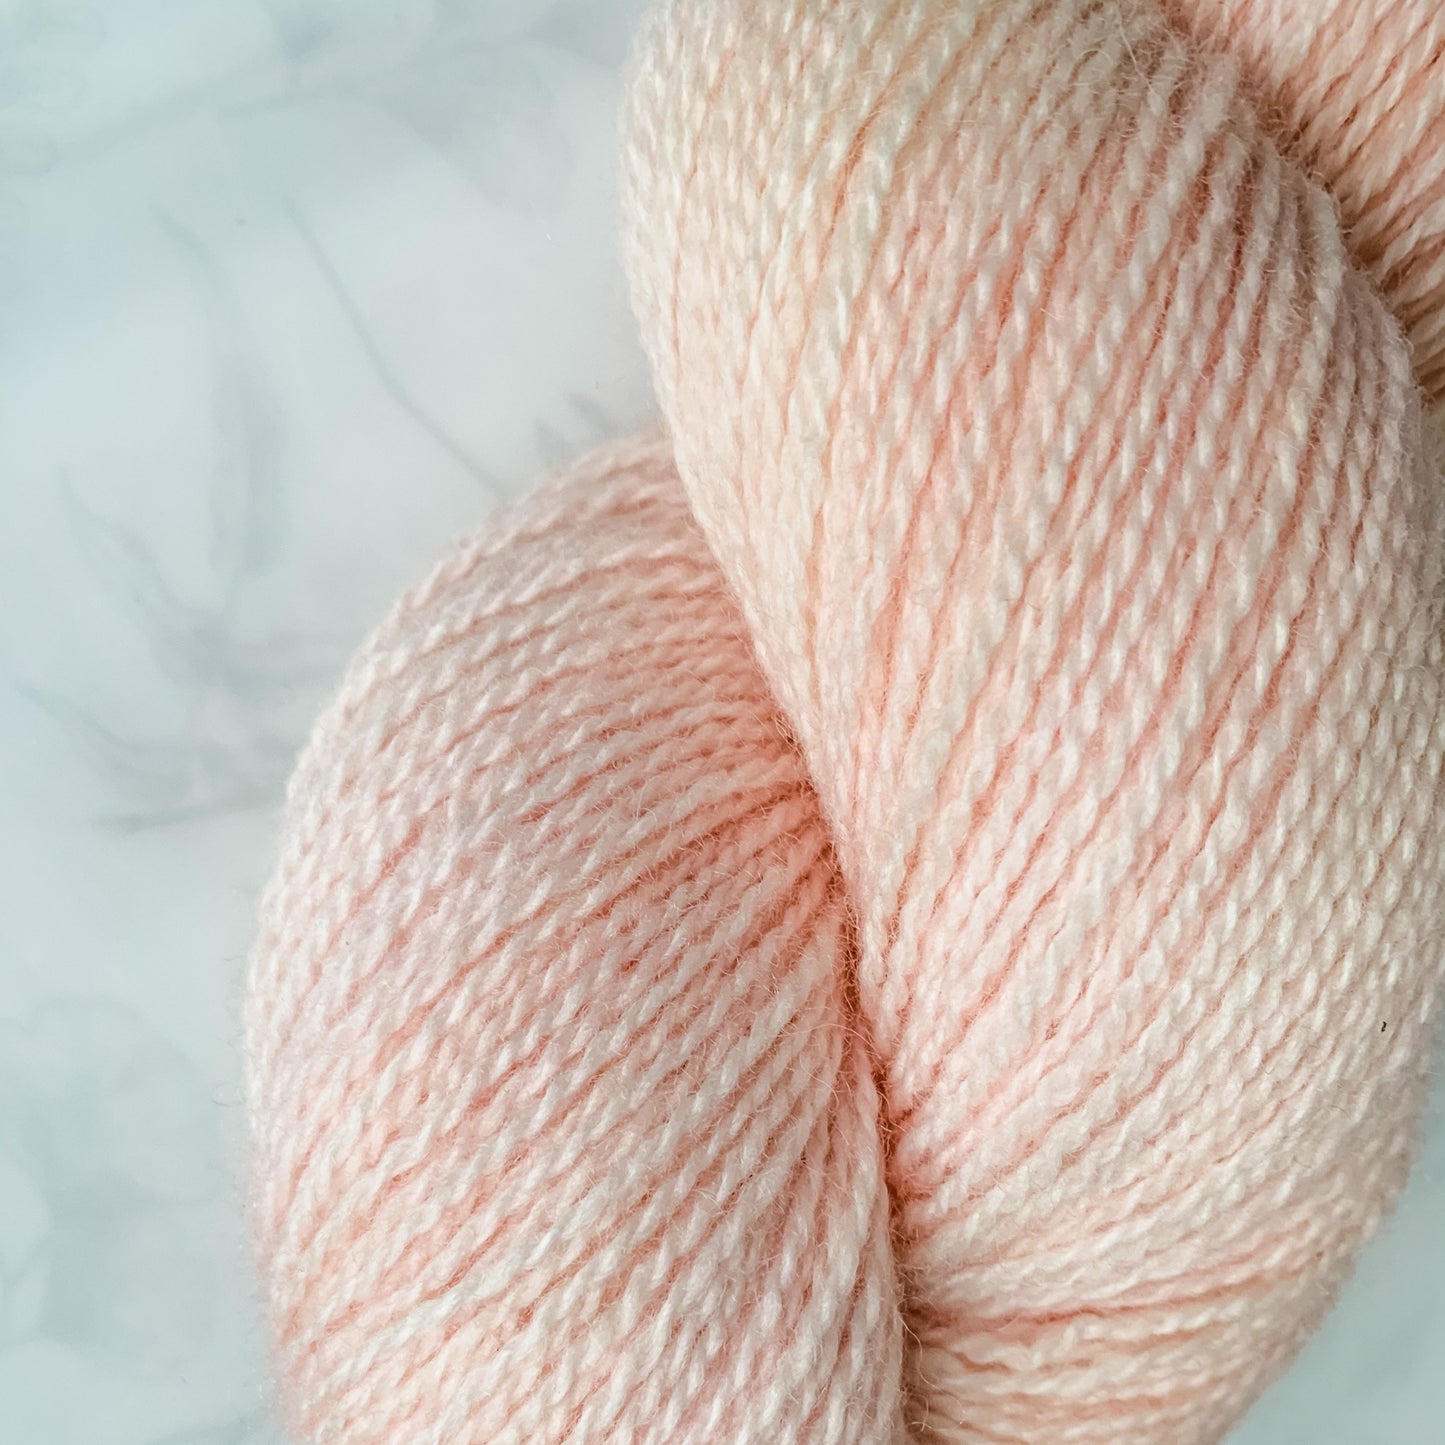 First Blush- Trollfjord sock - Hand Dyed Yarn - Tonal Yarn